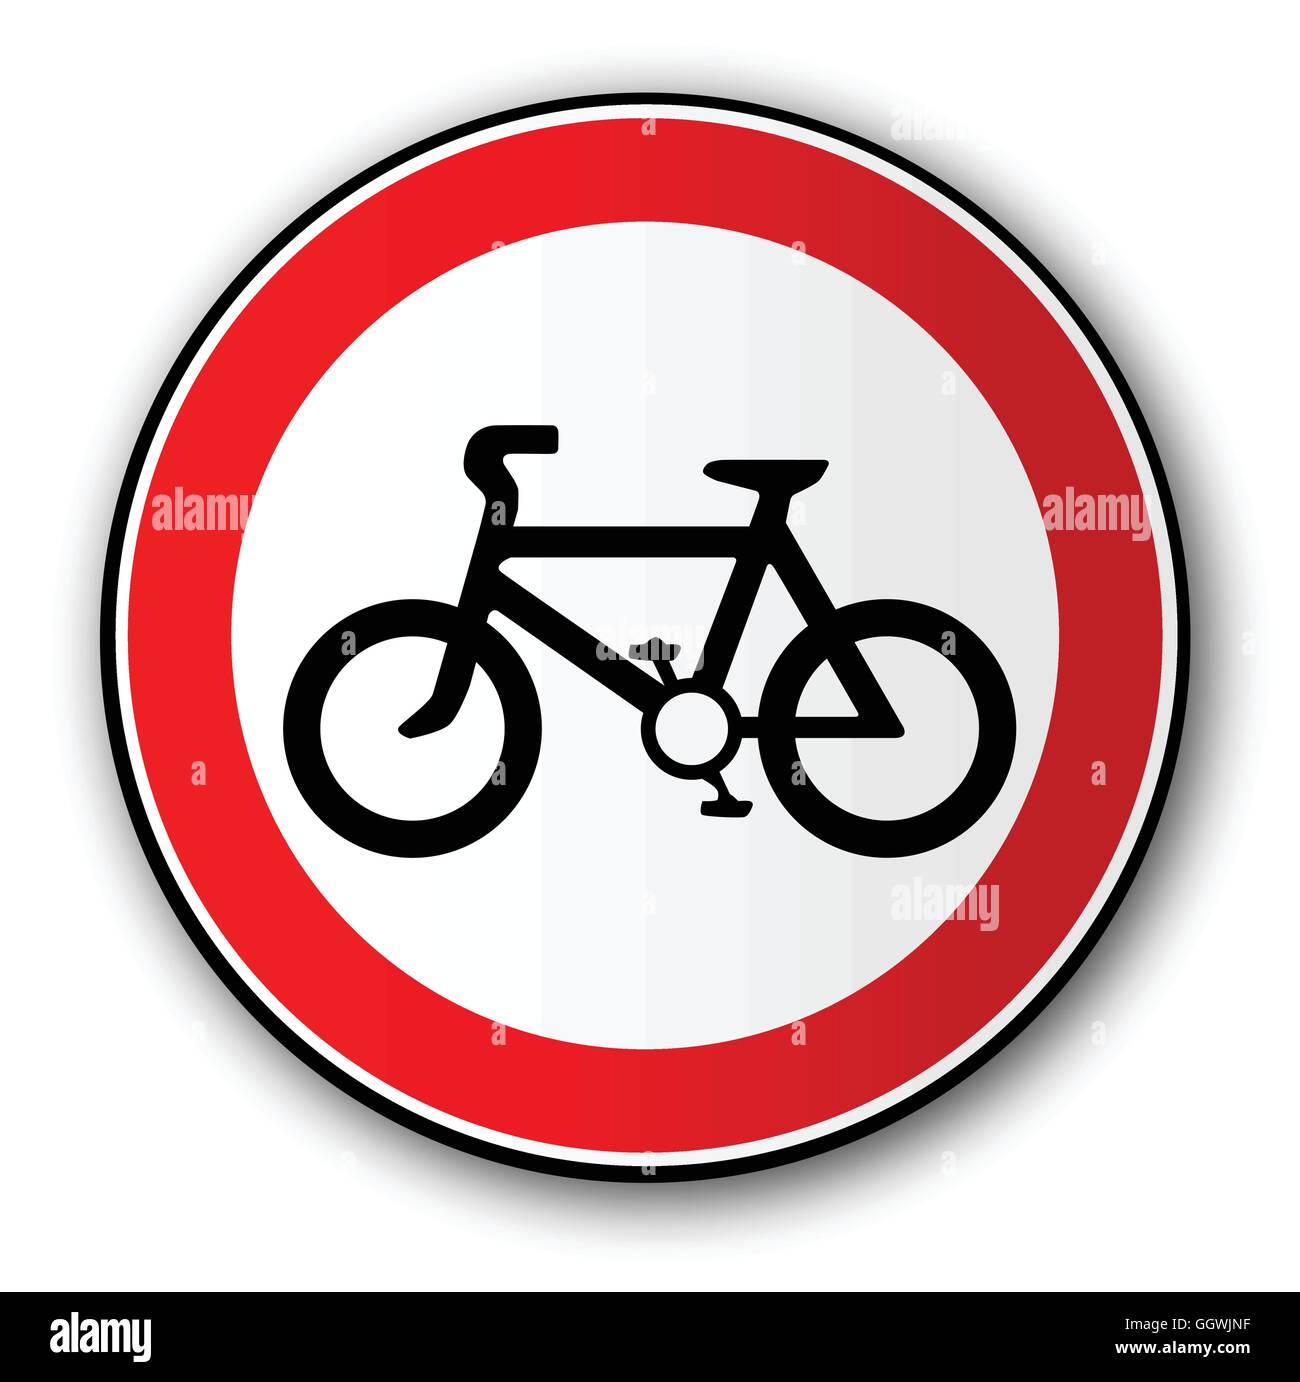 Una grande rotonda rossa segno di traffico la visualizzazione di una bicicletta Illustrazione Vettoriale